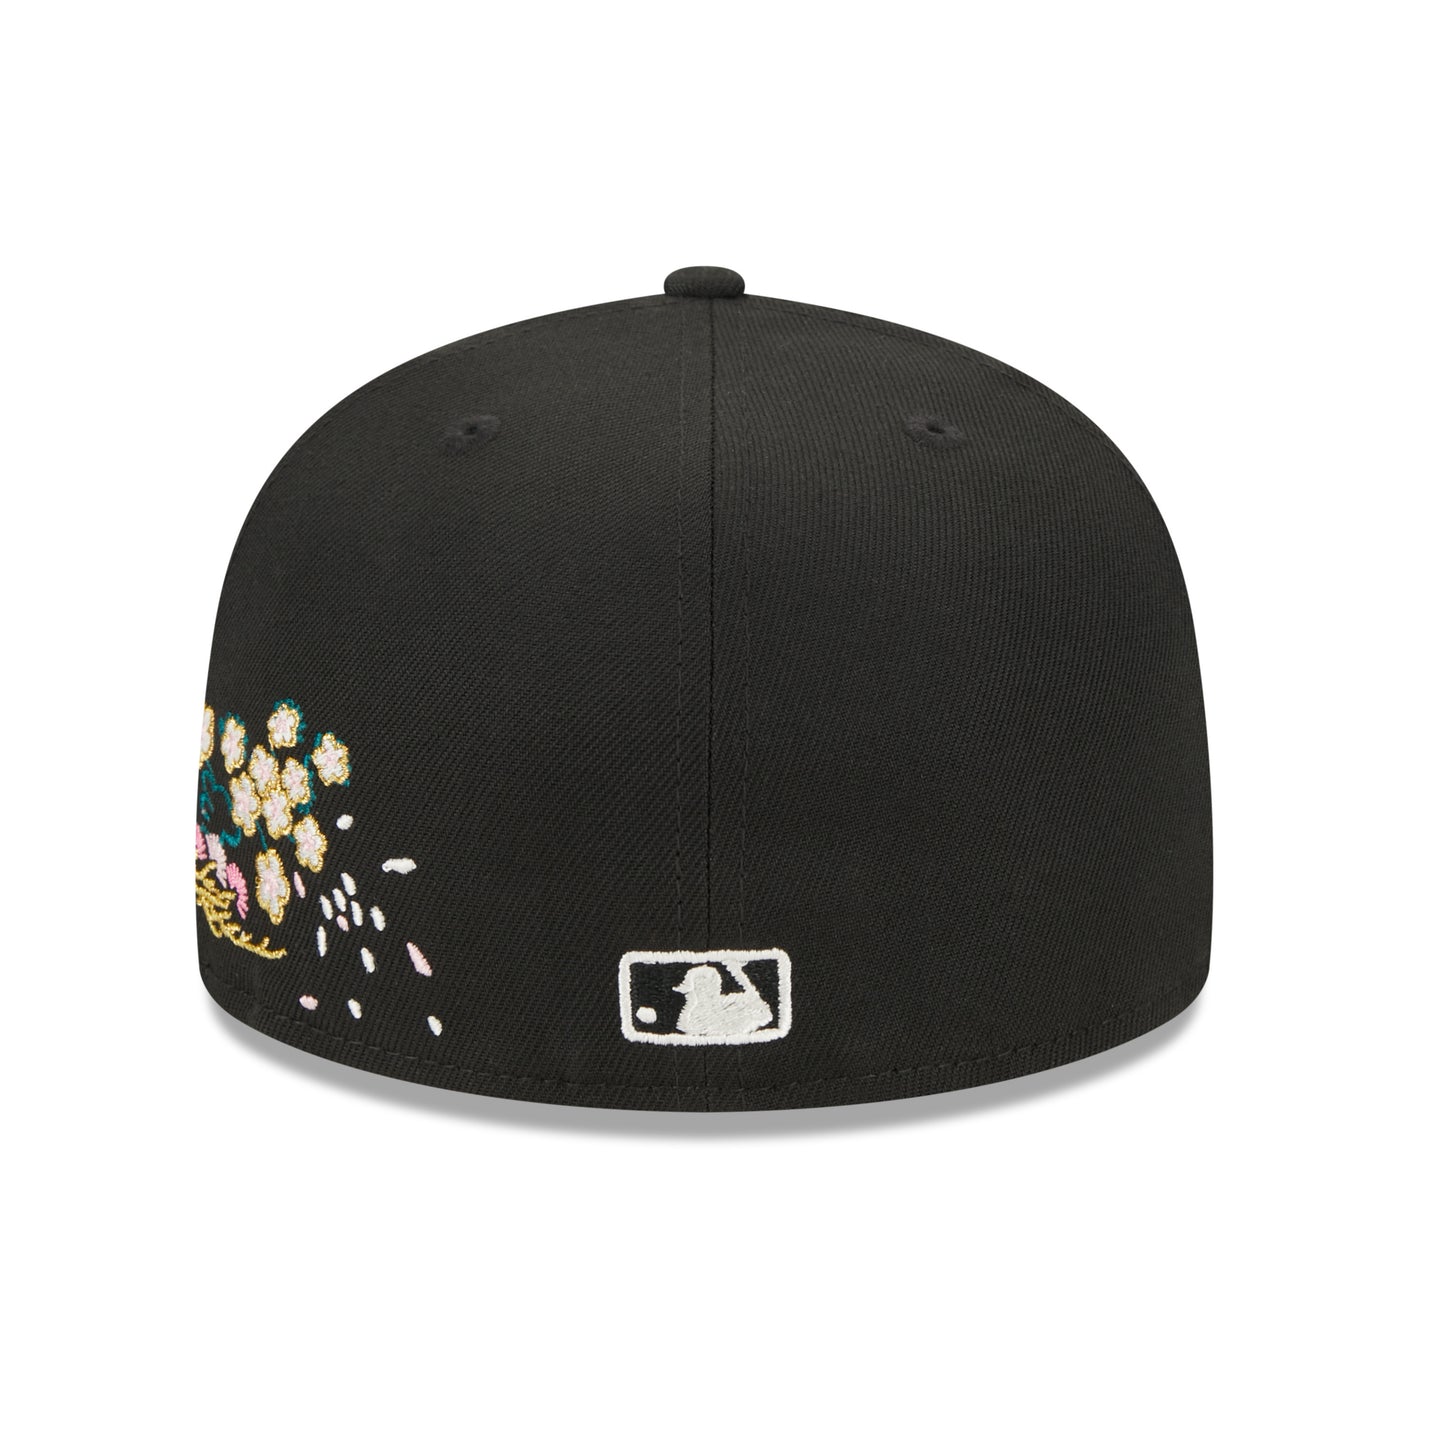 NEW ERA 59FIFTY MLB HOUSTON ASTROS CHERRY BLOSSOM BLACK / GREY UV FITTED CAP